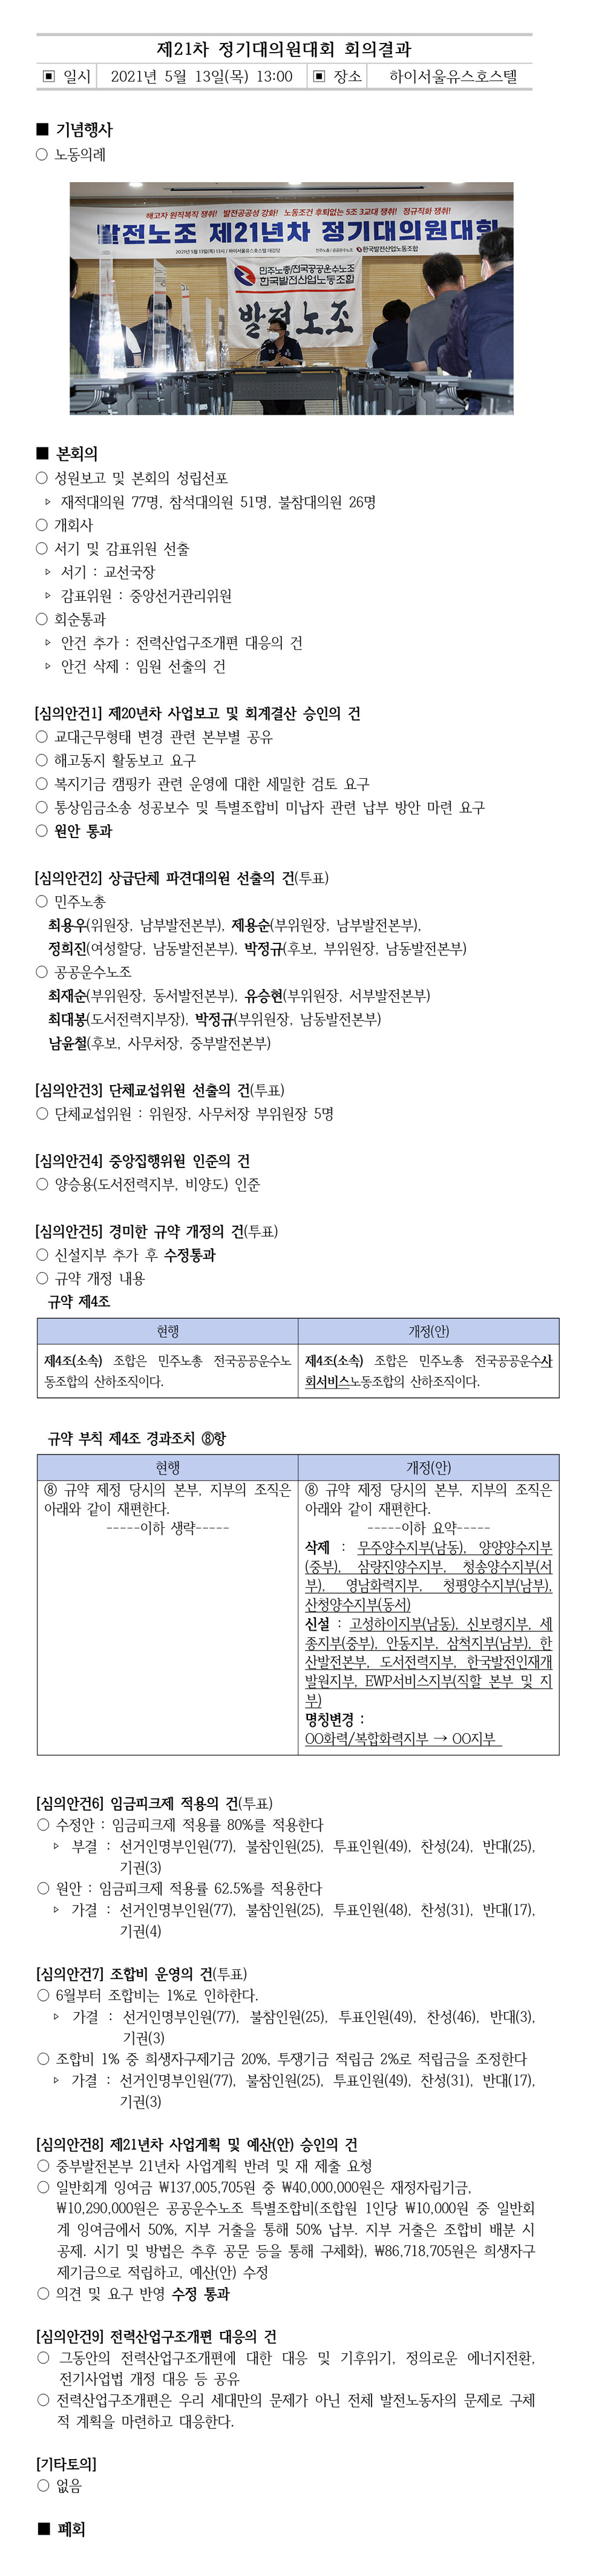 제21차정기대의원대회회의결과.jpg